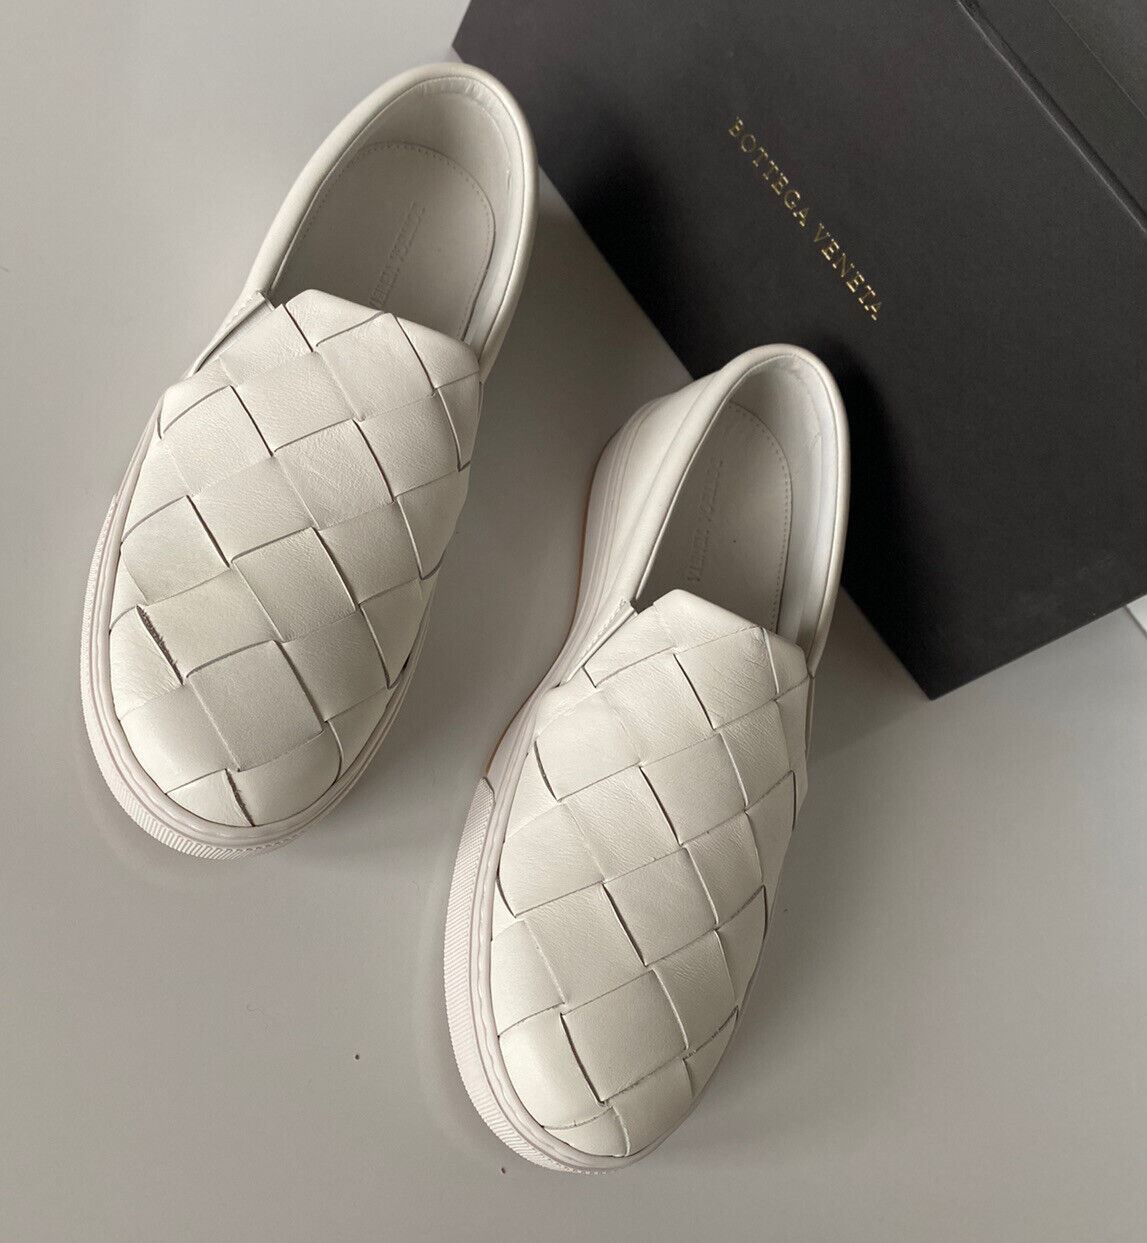 NIB 760 долларов США Bottega Veneta Белые туфли из телячьей кожи с резиновой подошвой и оптикой 12 608751 